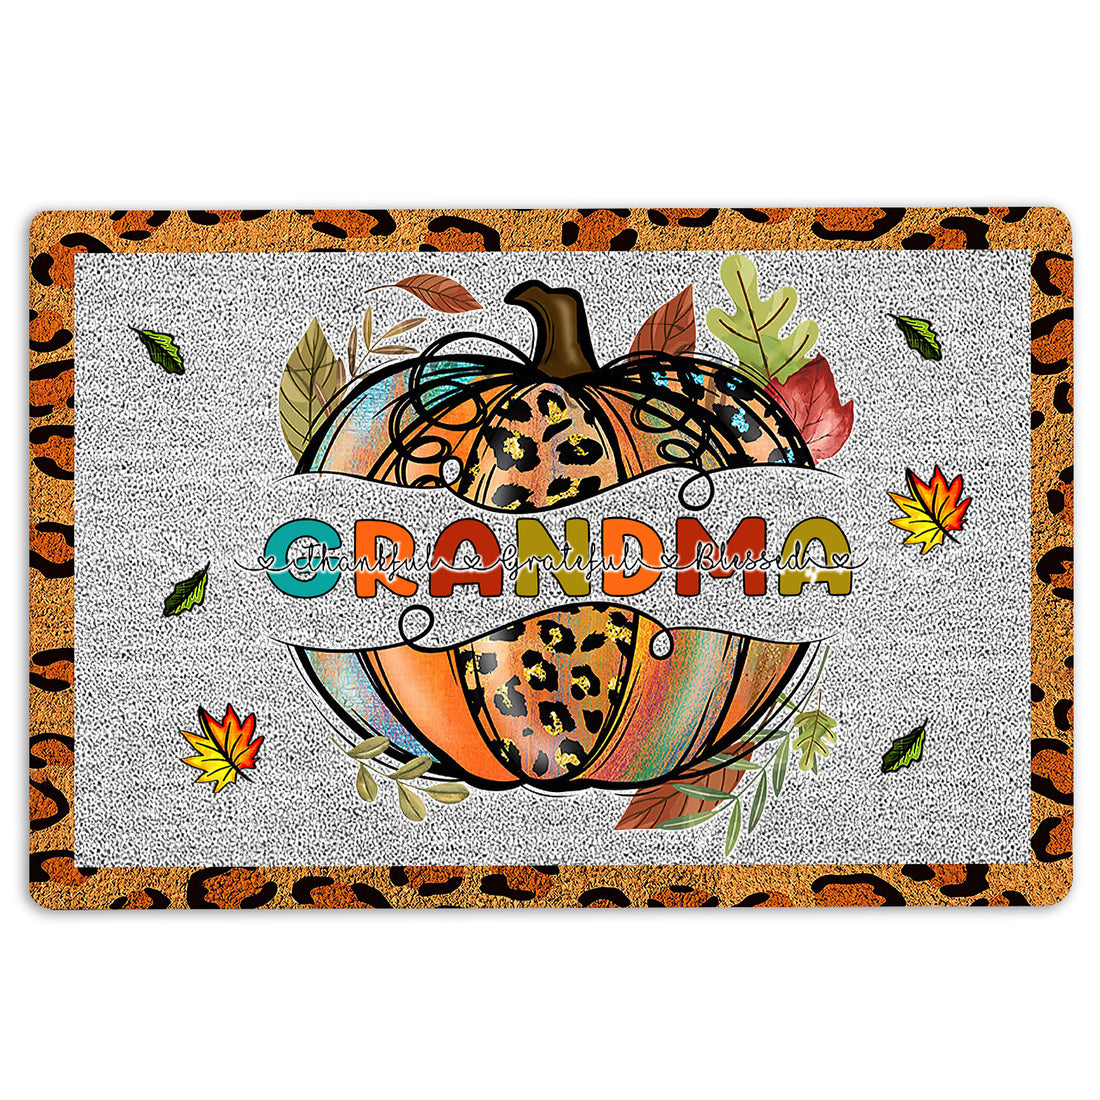 Ohaprints-Doormat-Outdoor-Indoor-Thanksgiving-Pumpkin-Grandma-Greatful-Thankful-Blessed-Rubber-Door-Mat-37-18'' x 30''